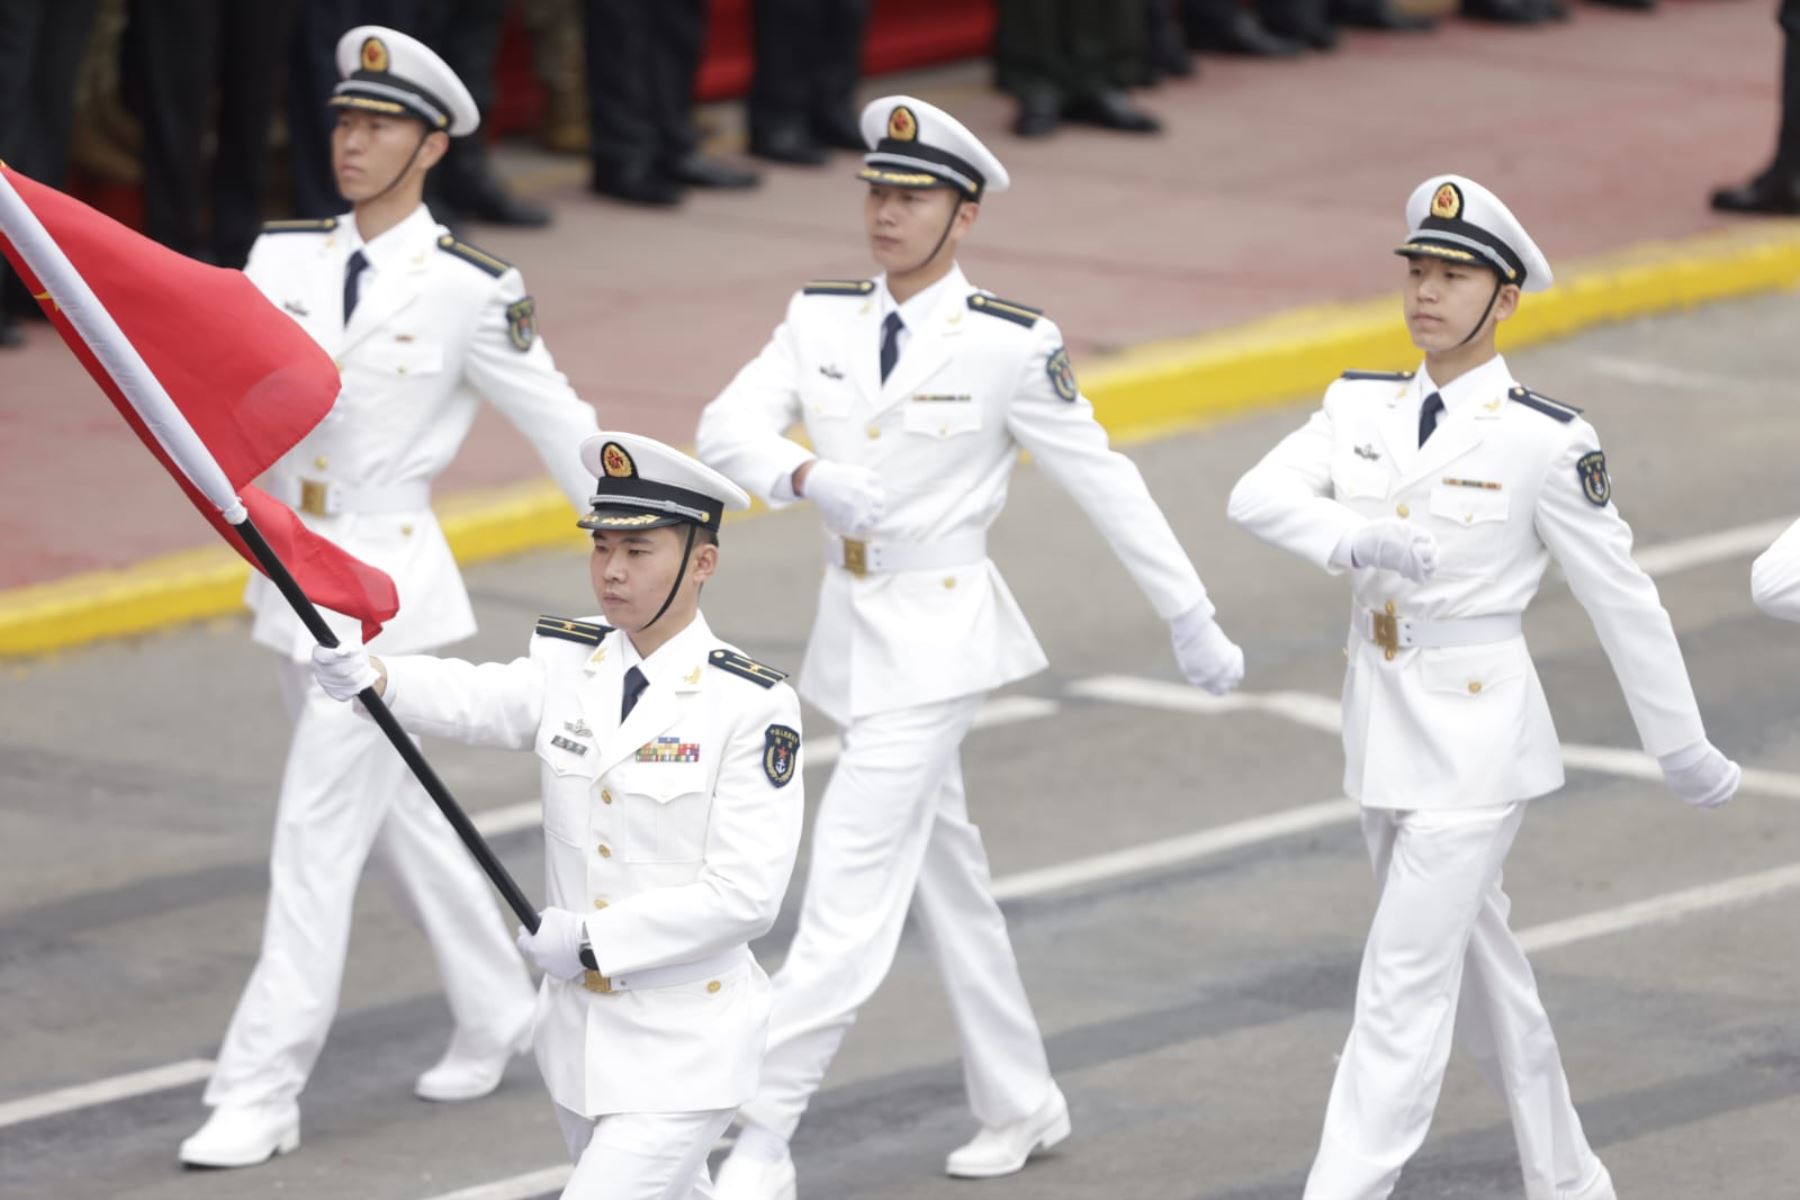 Parada Cívico-Militar: así fue el paso de delegación de China y otros países